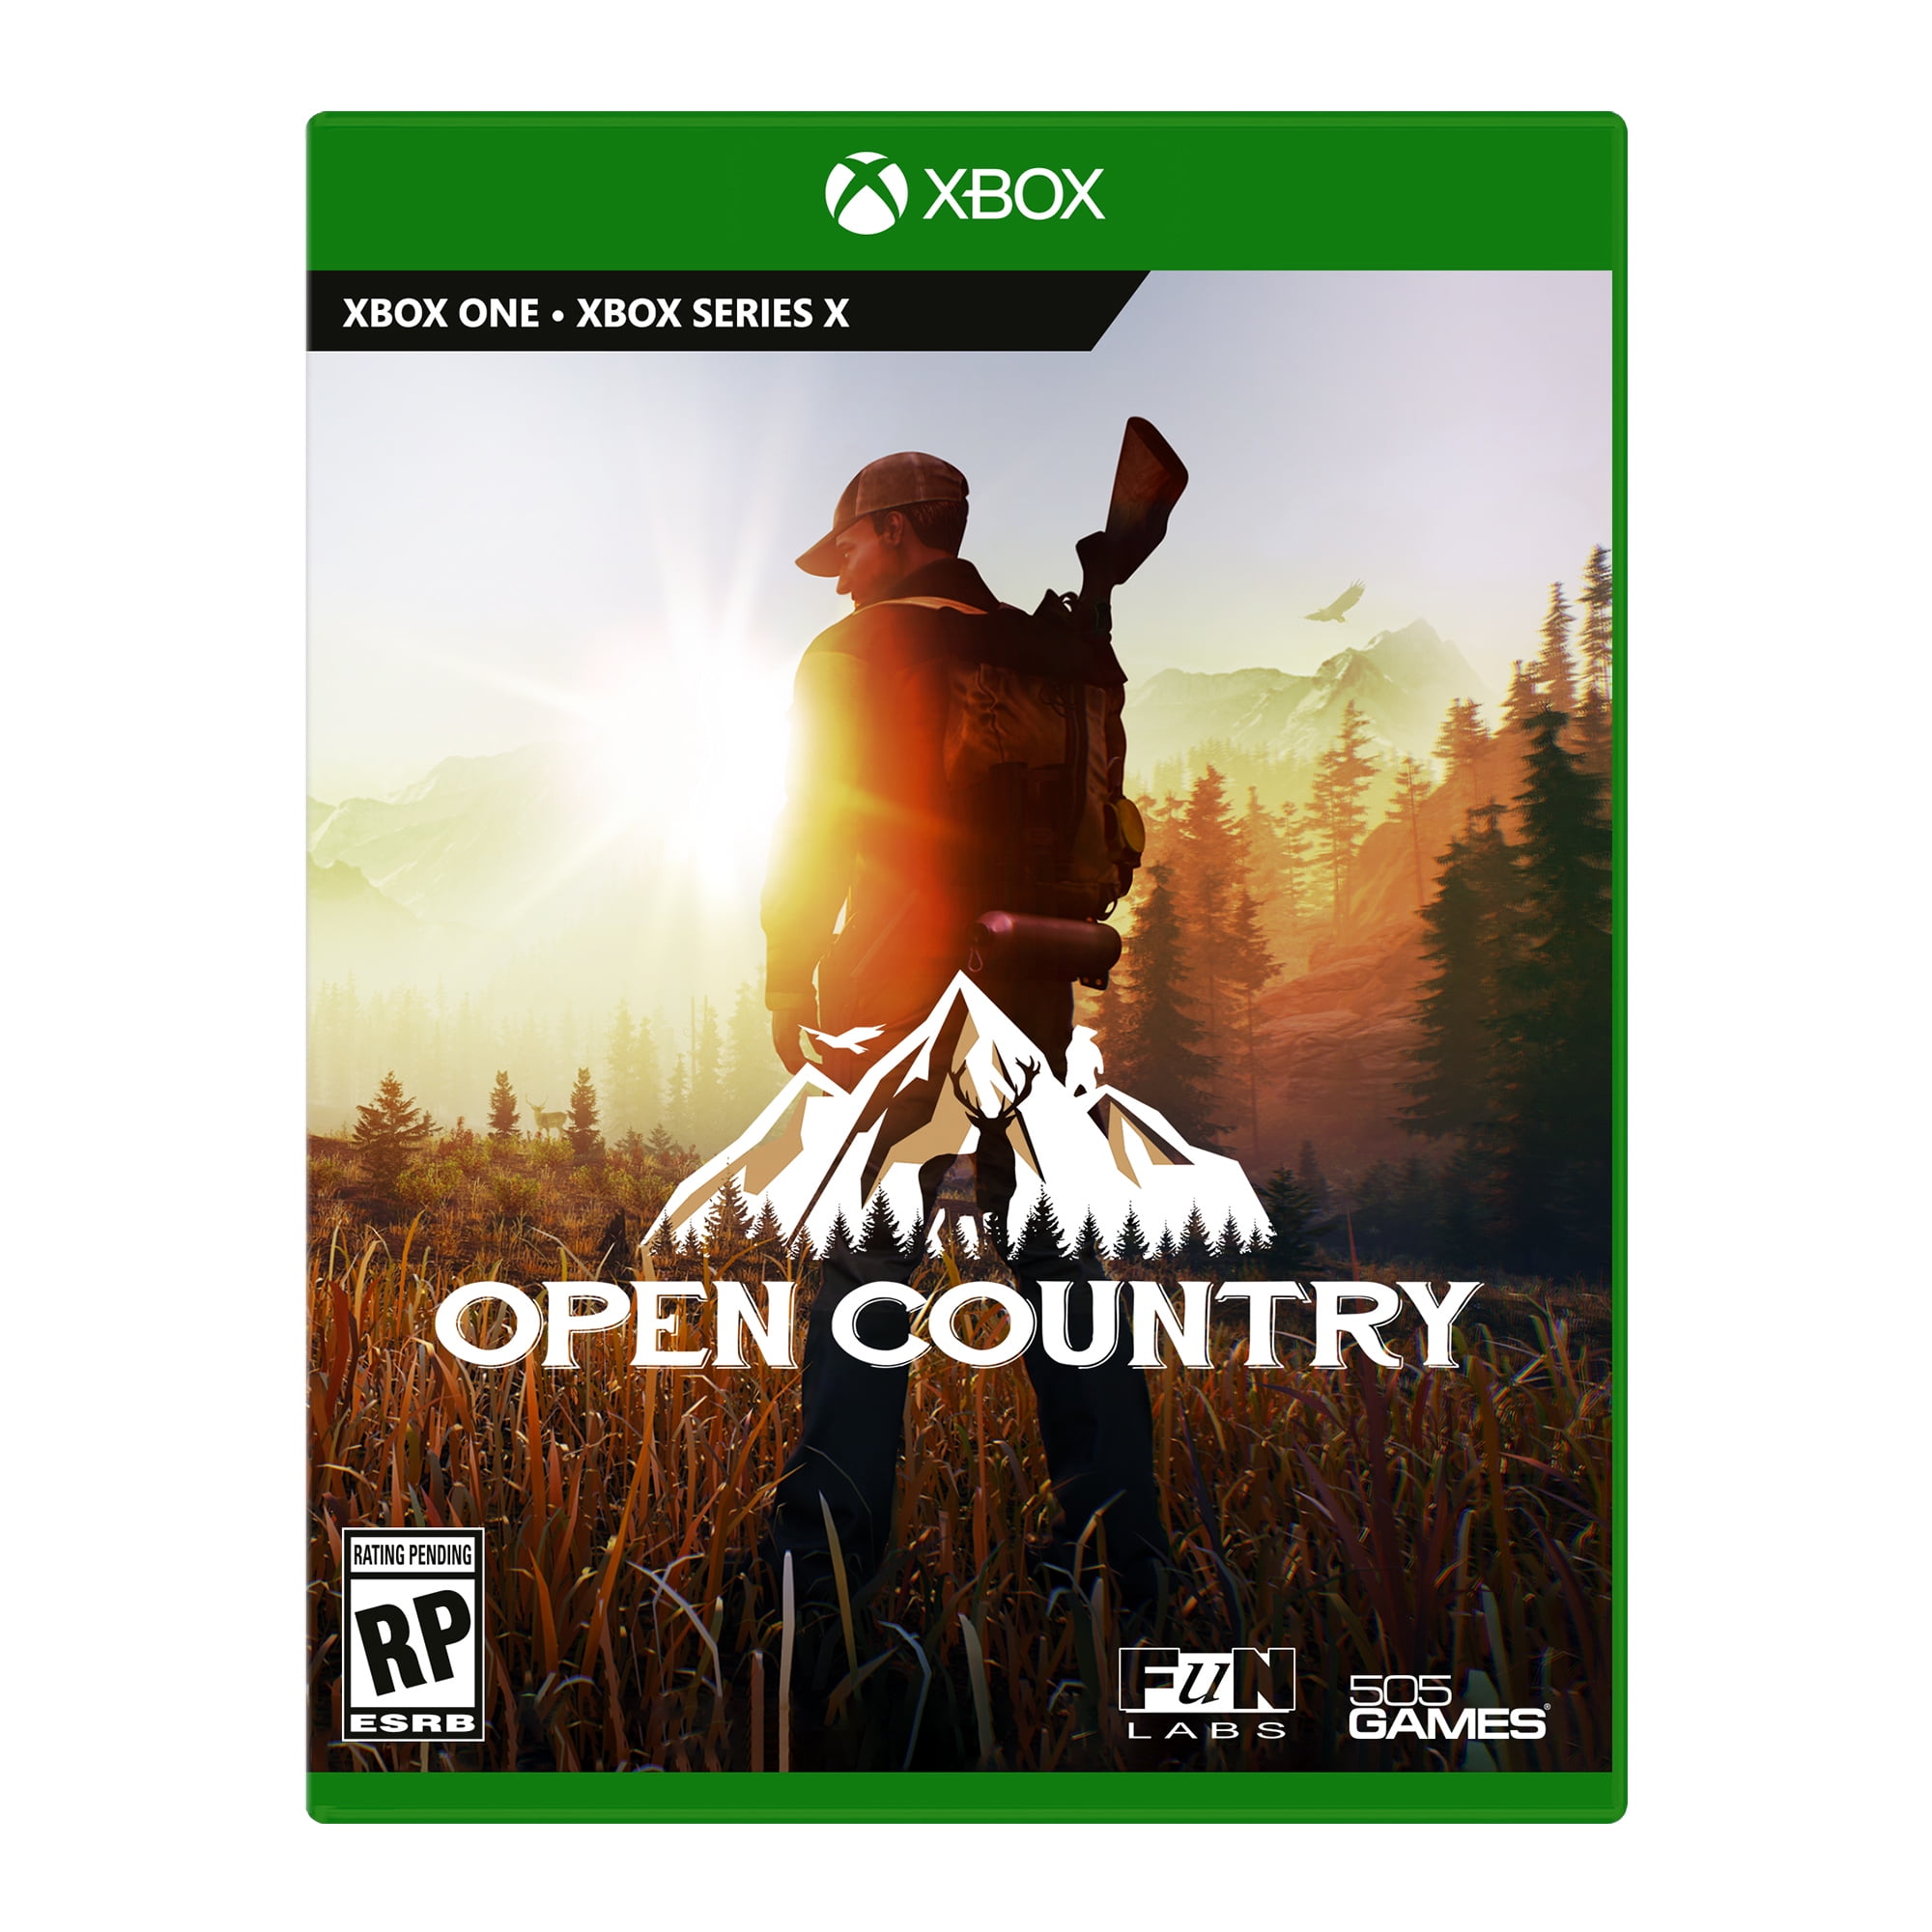 Buskruit Schep Onze onderneming 505 Games Open Country, CD, Video Games - Xbox One - Walmart.com